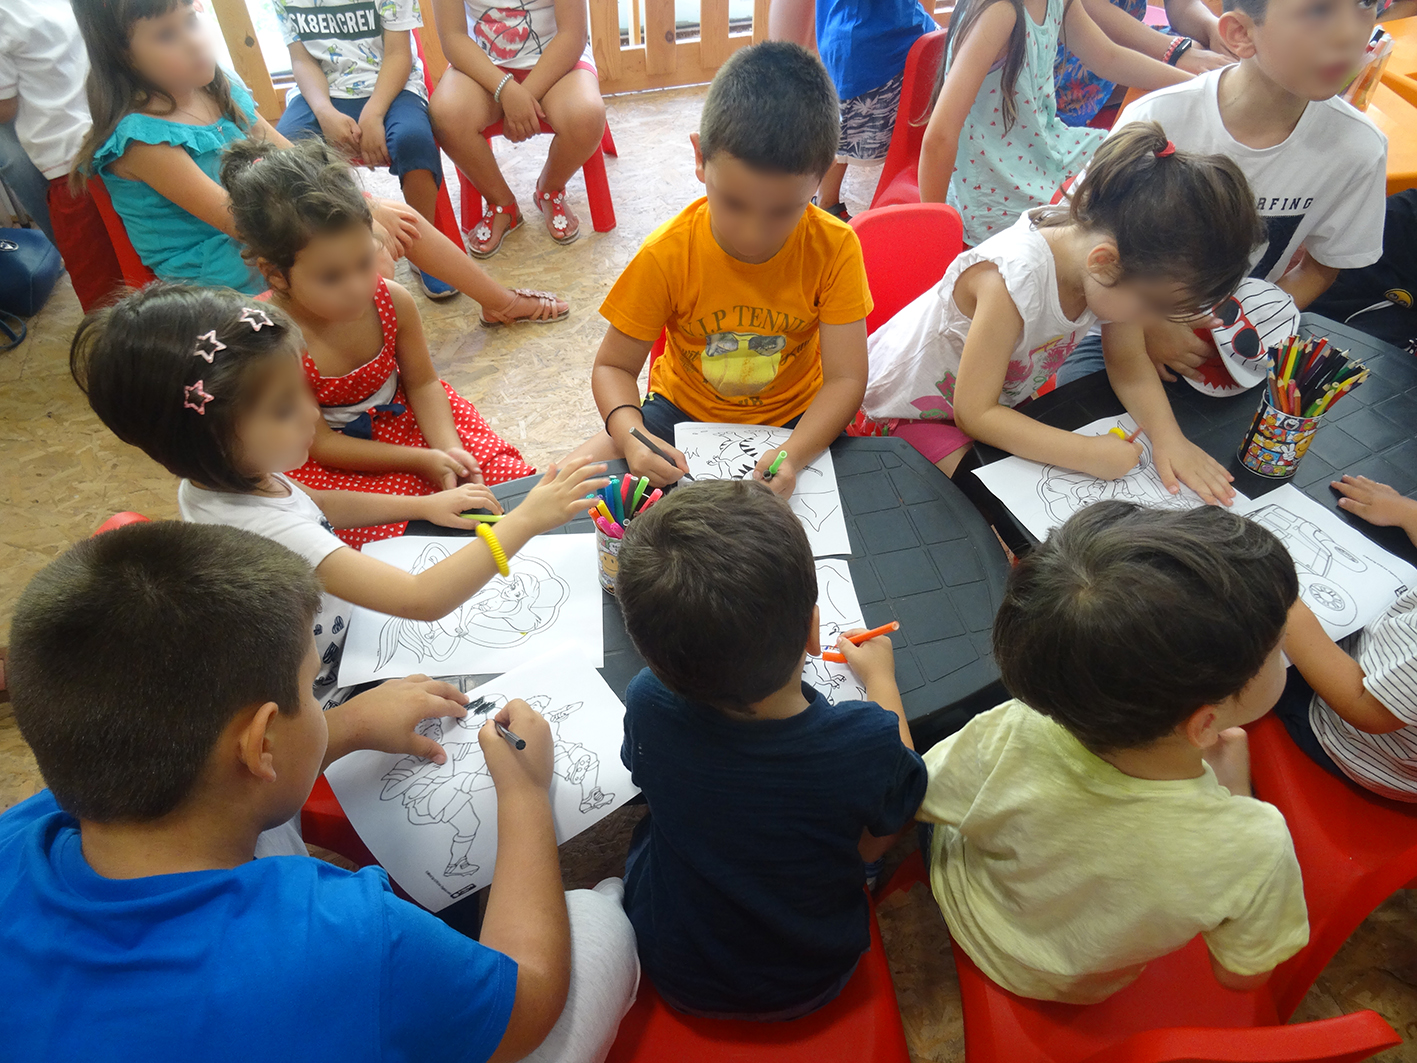 Μία διαφορετική εκδήλωση για παιδιά από την Αργυρώ Μουντάκη (φωτο)